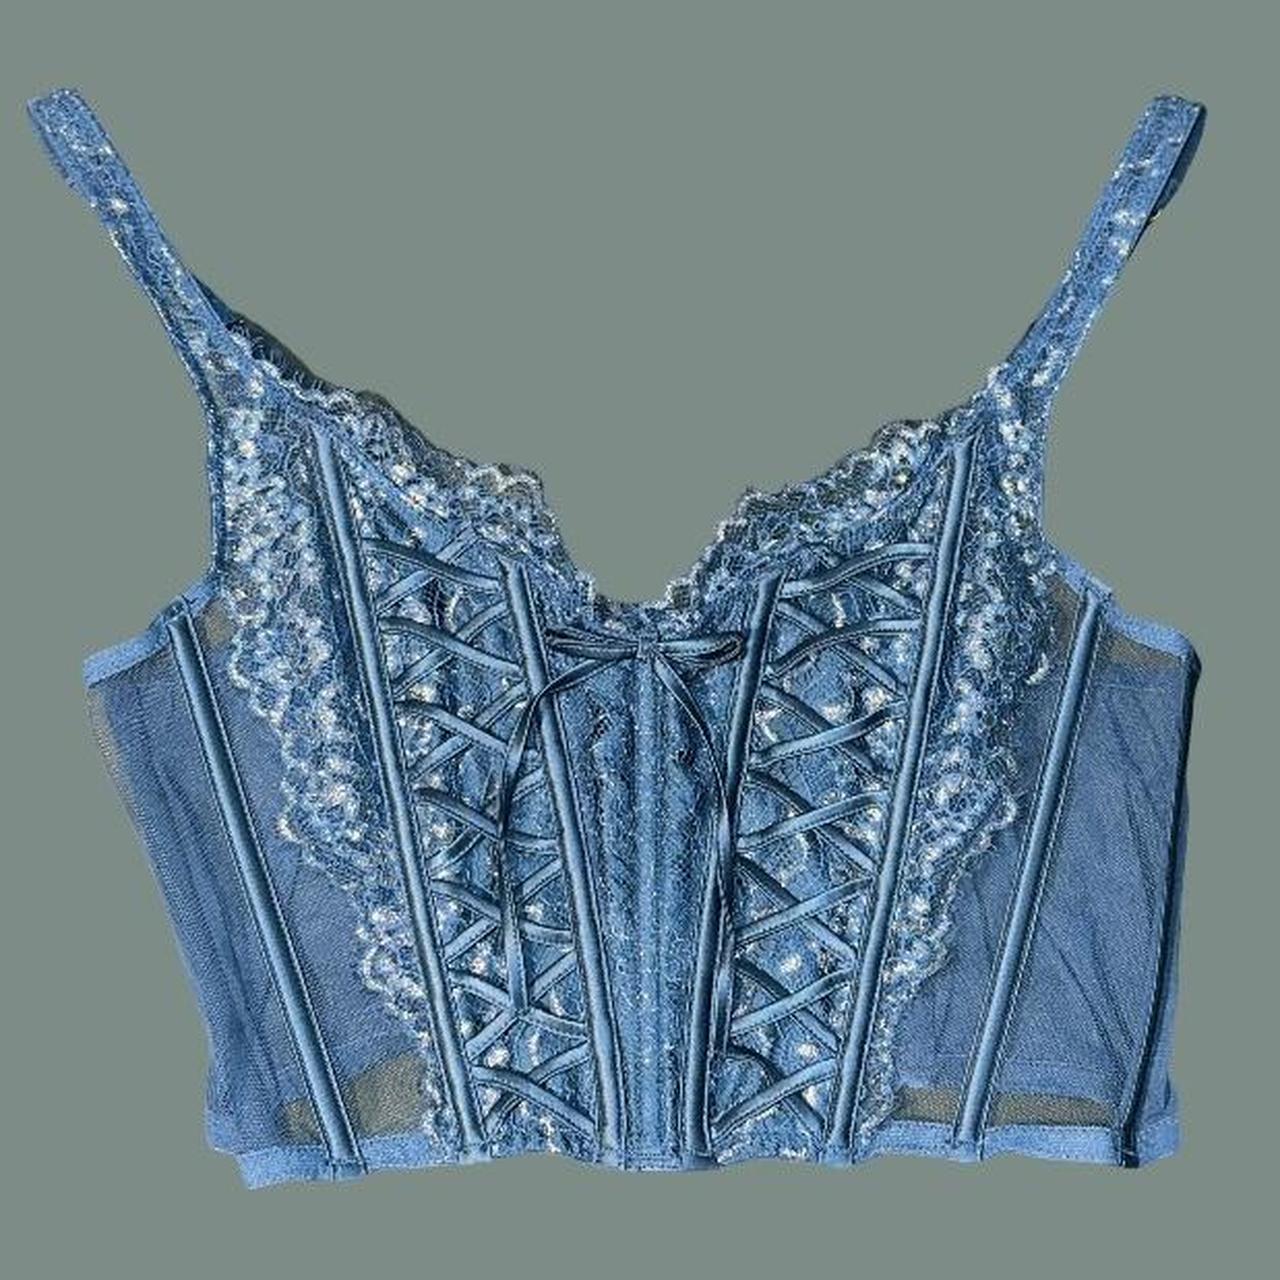 Blue lace Victoria's Secret triangle bralette 💙 - Depop